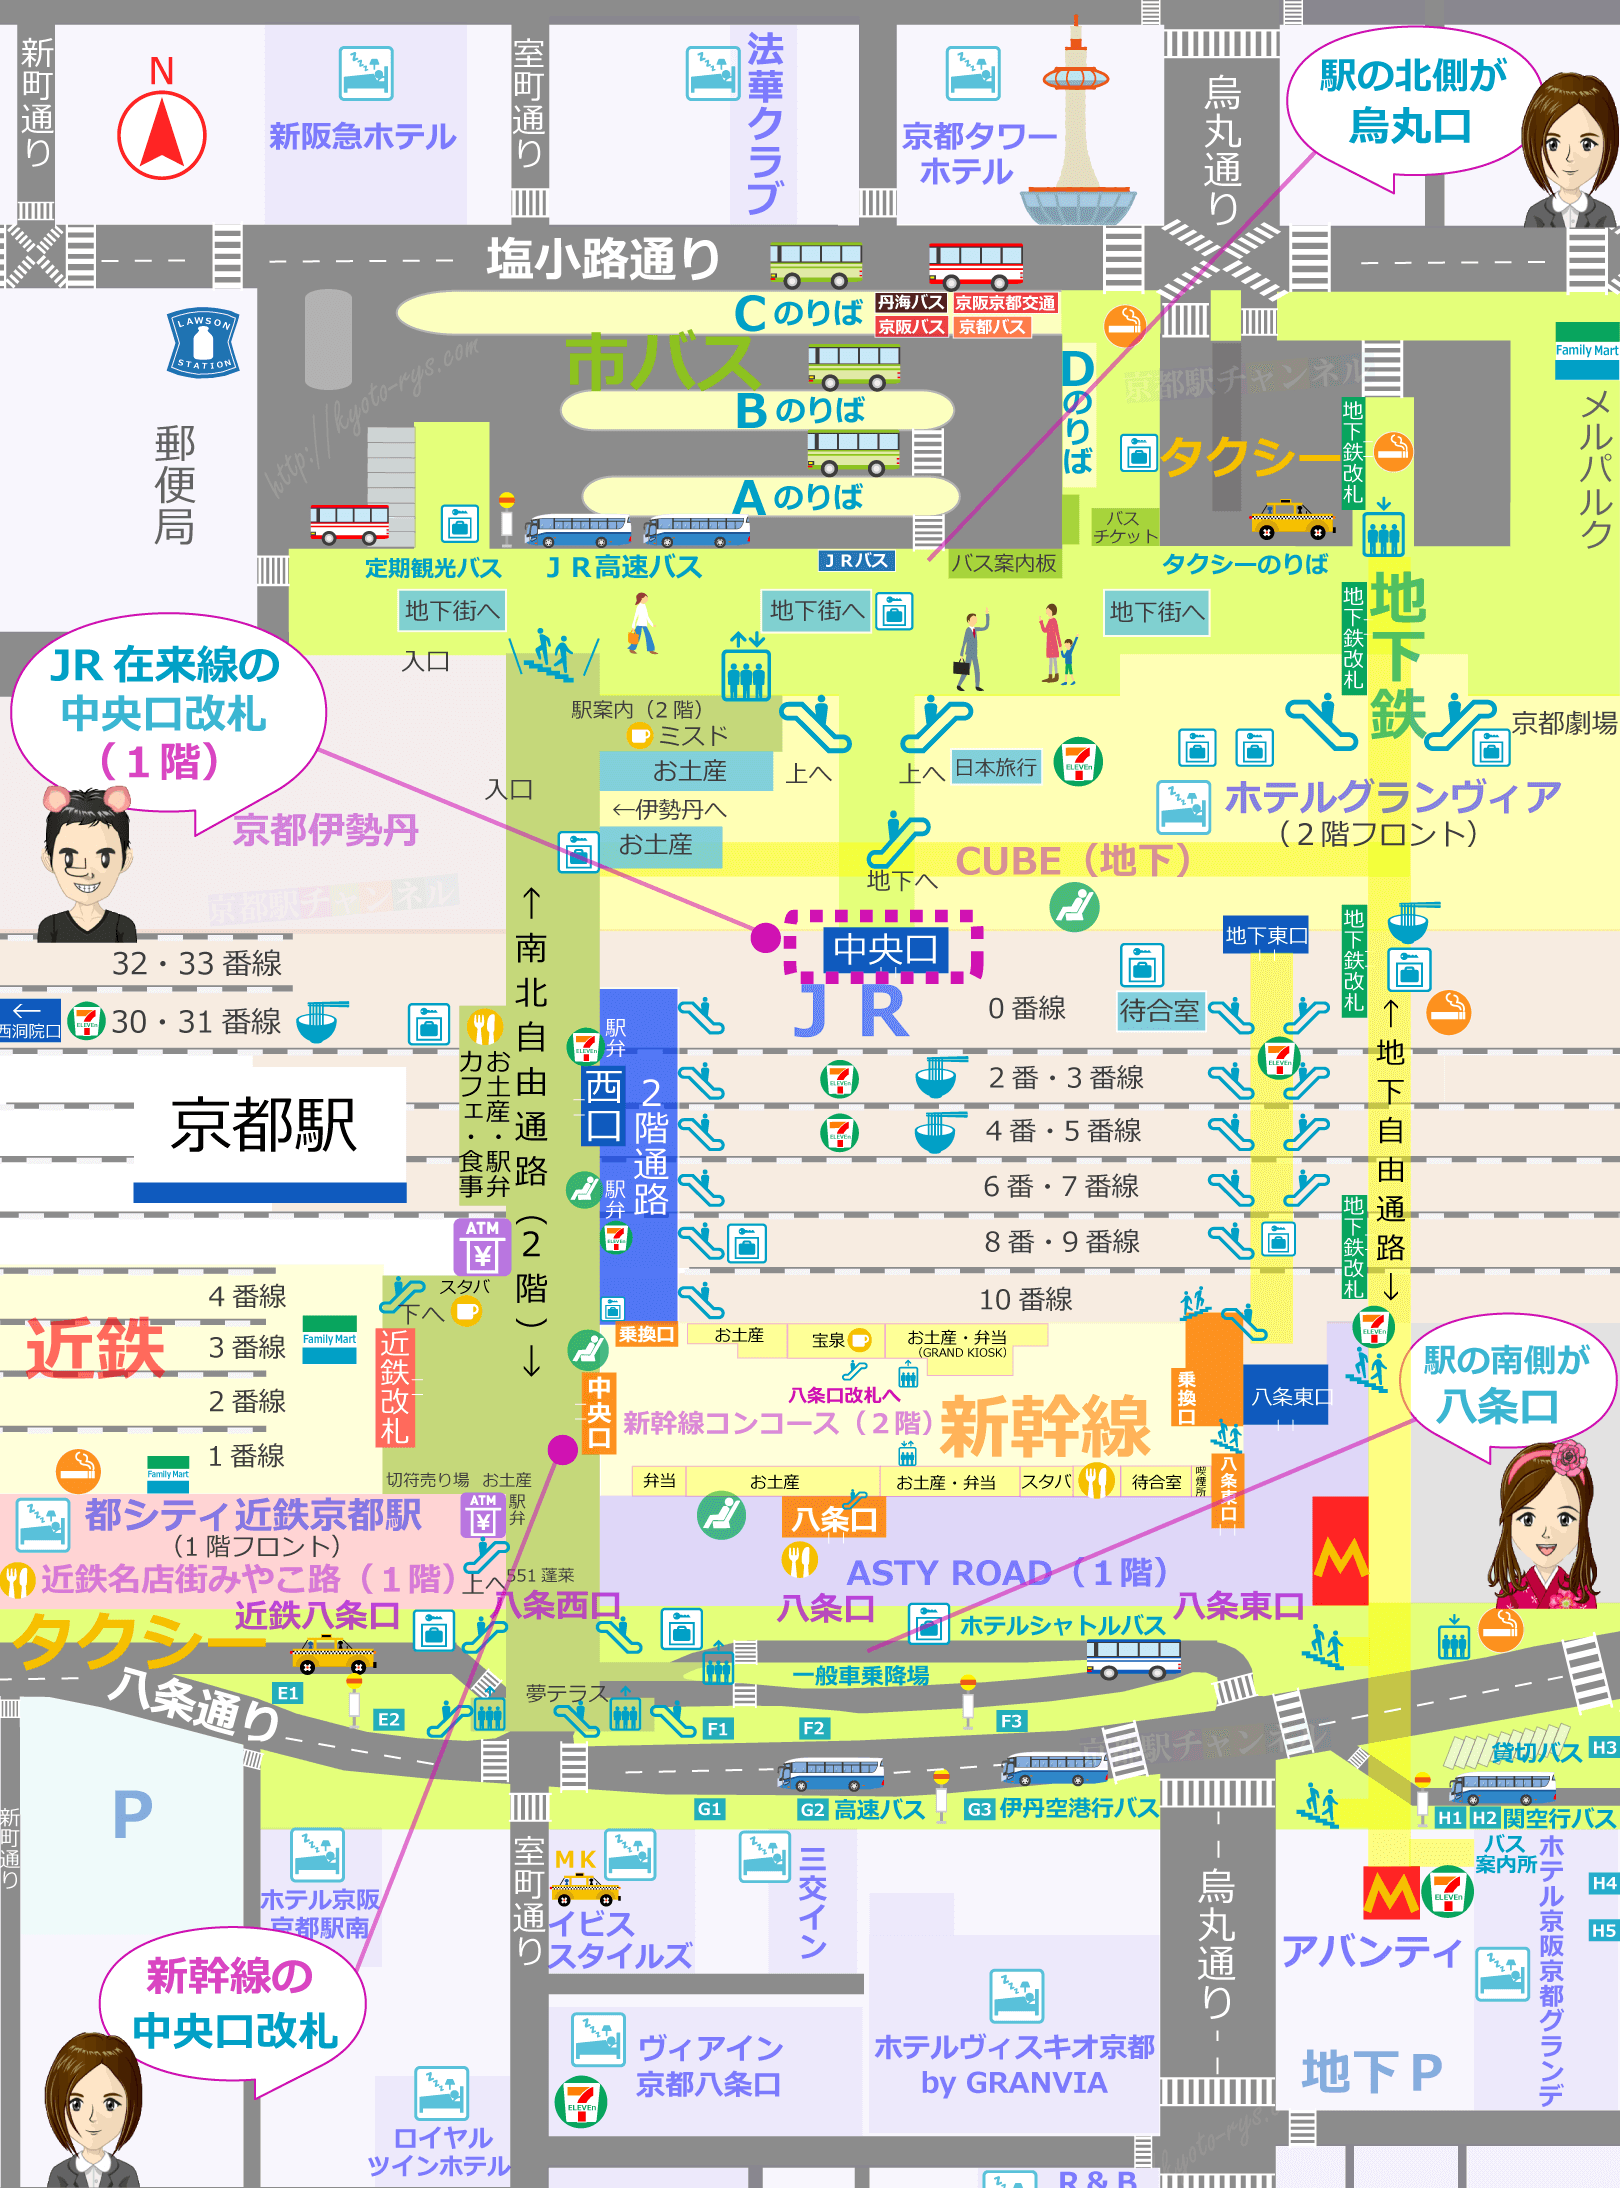 京都駅の構内図と中央口のマップ